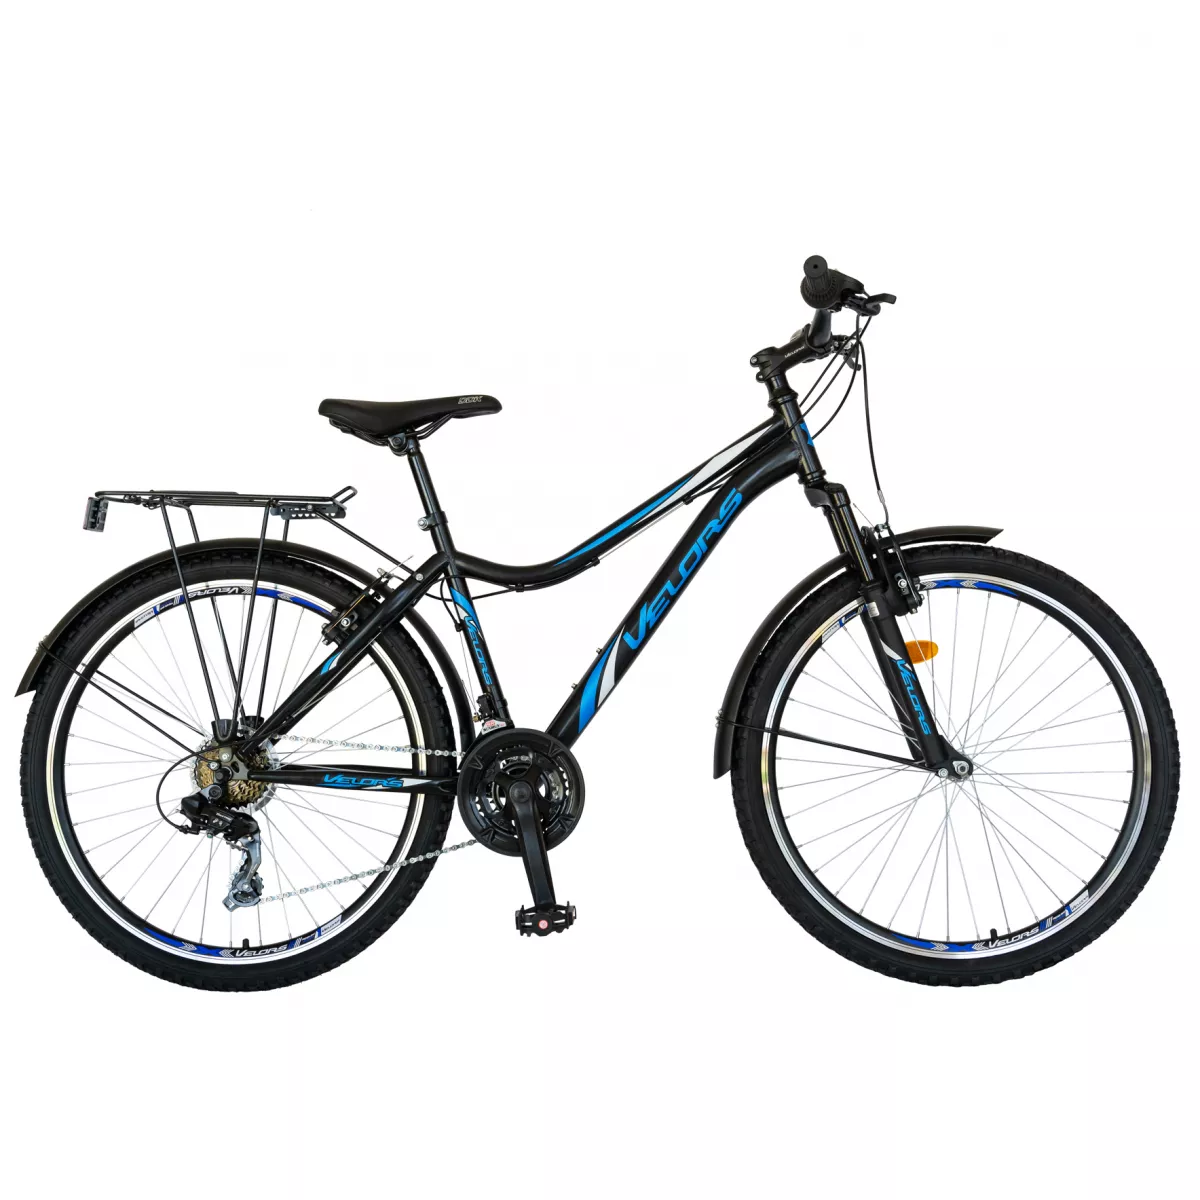 Bicicleta CITY Velors V2433B, roata 24 inch, echipare Shimano, 18 viteze, culoare negru/albastru